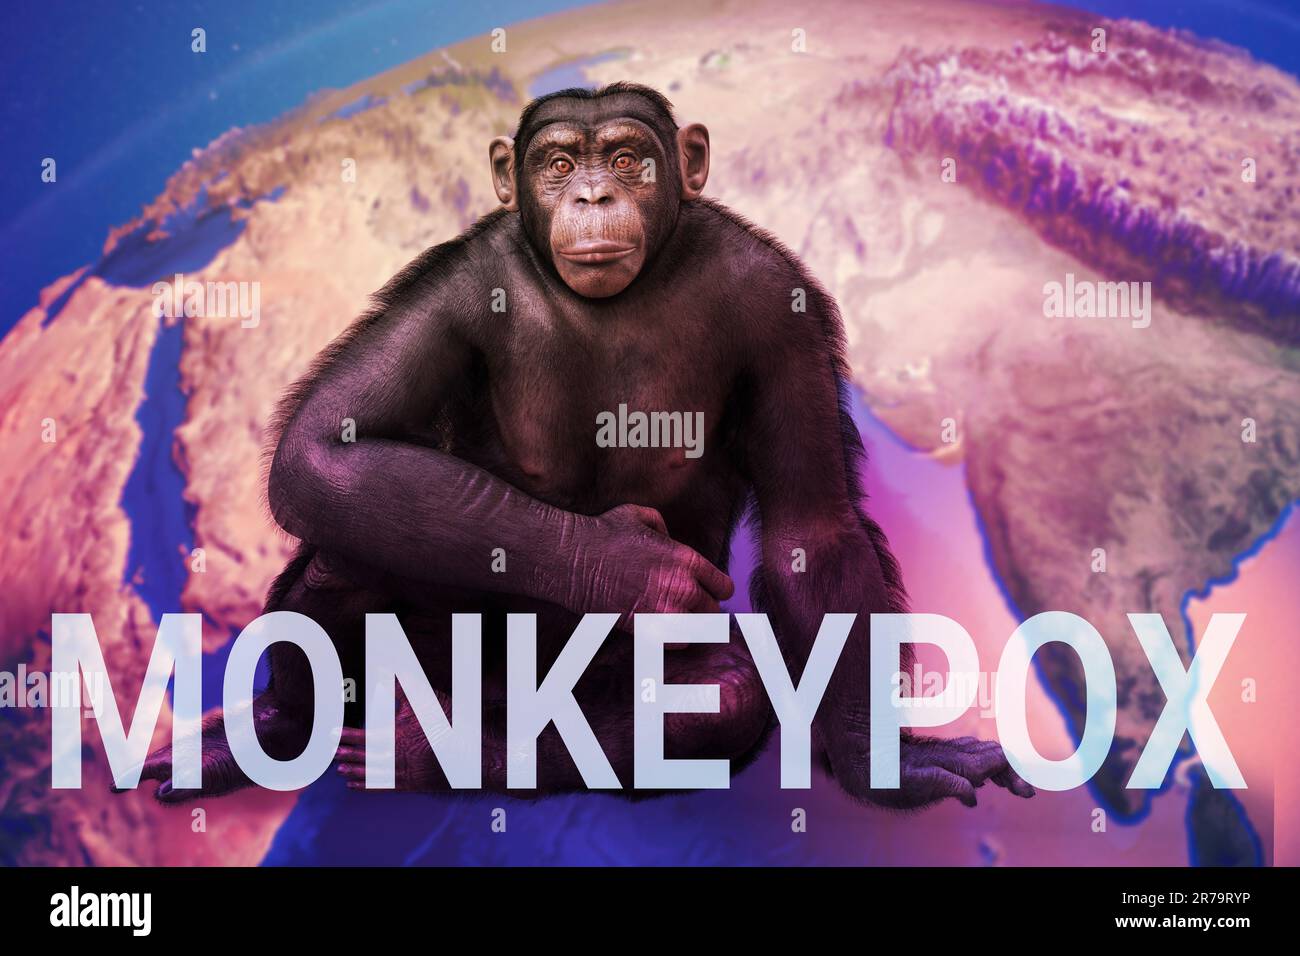 Consapevolezza di Monkeypox. Scimmia seduta sulla mappa terrestre con testo Monkeypox, illustrazione concettuale 3D. Foto Stock